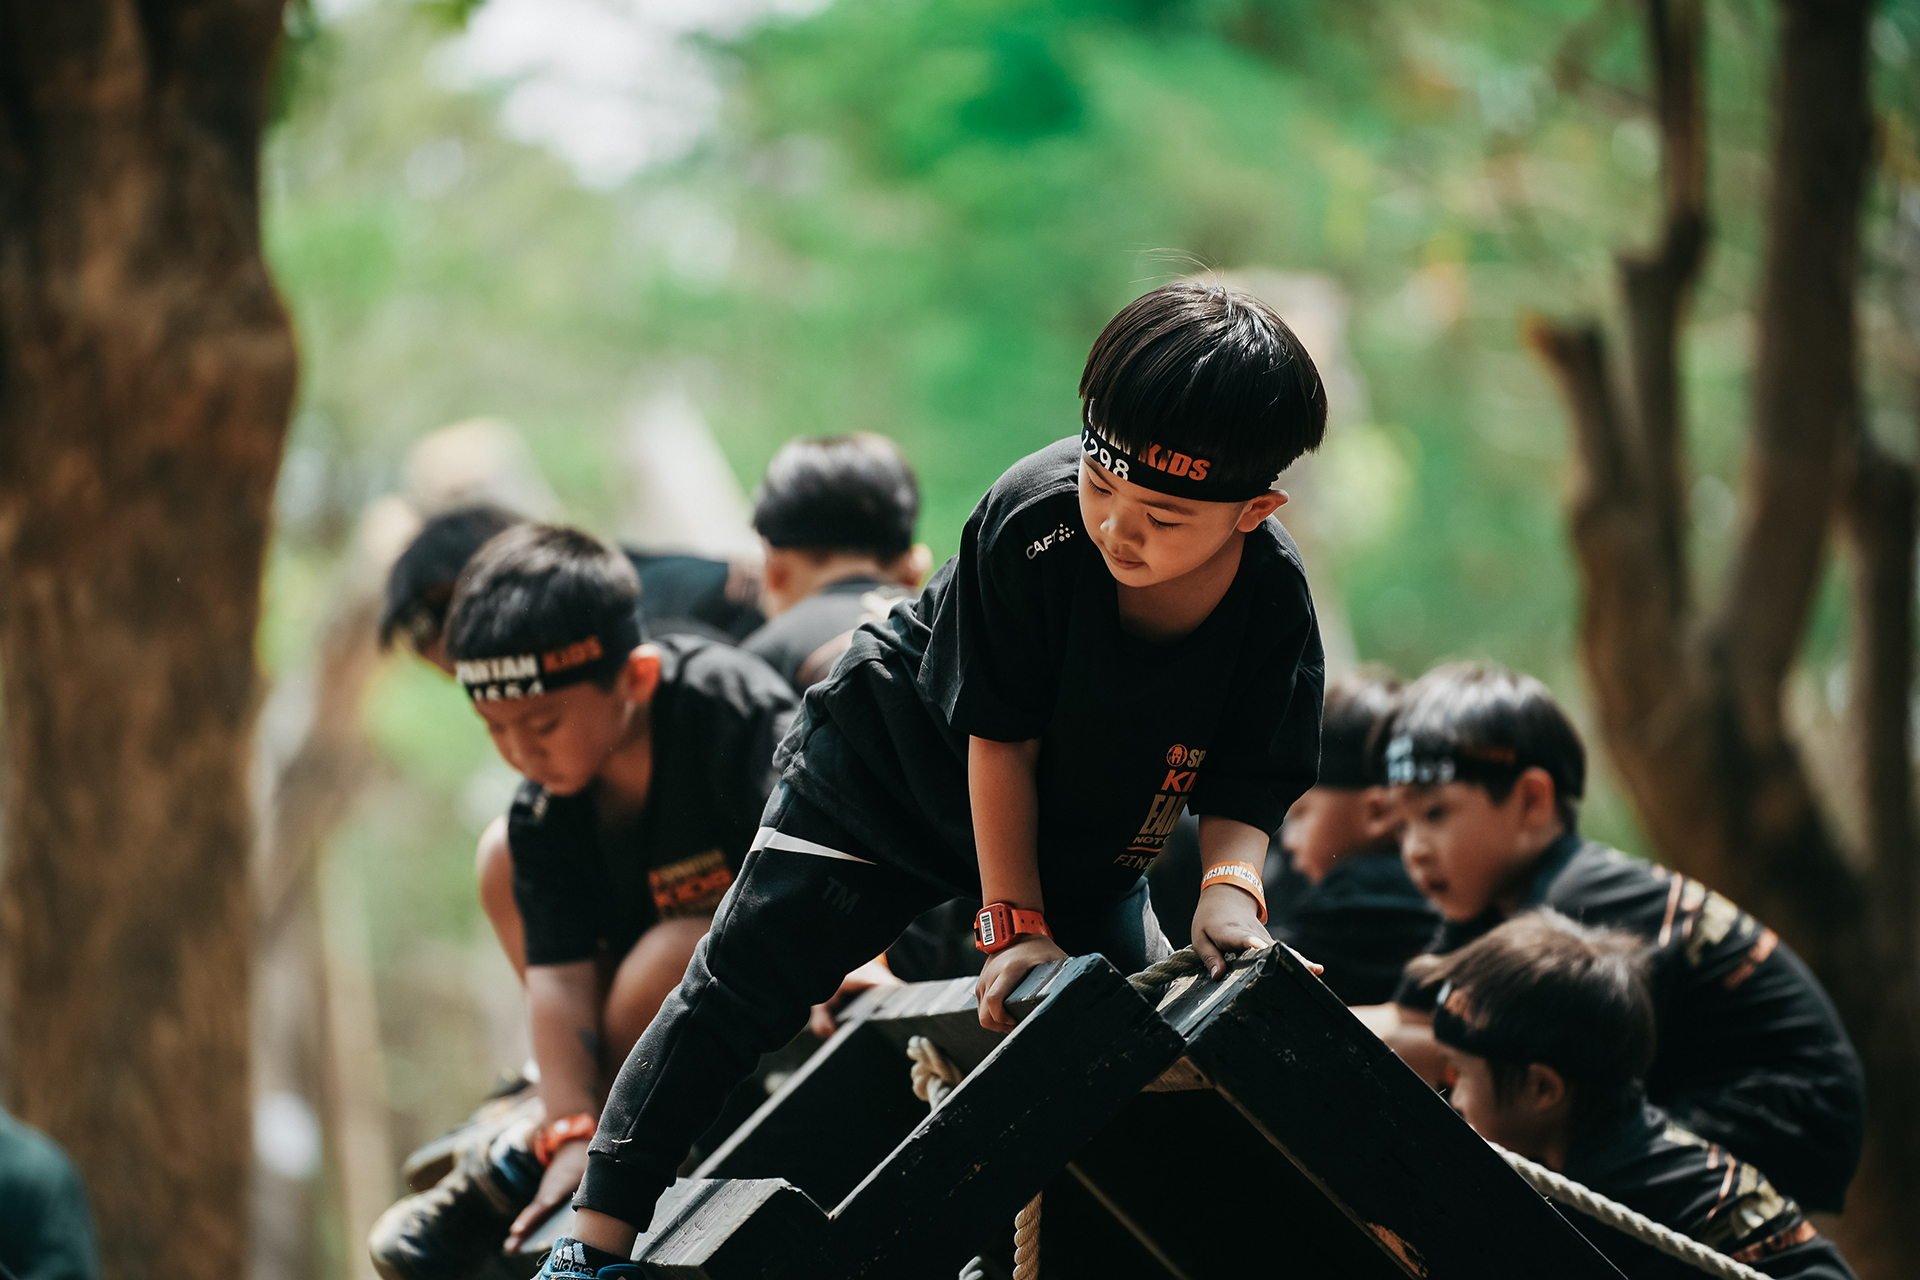 訓練握力與攀爬技巧的「Slip Wall」。照片由台灣斯巴達障礙跑競賽 提供